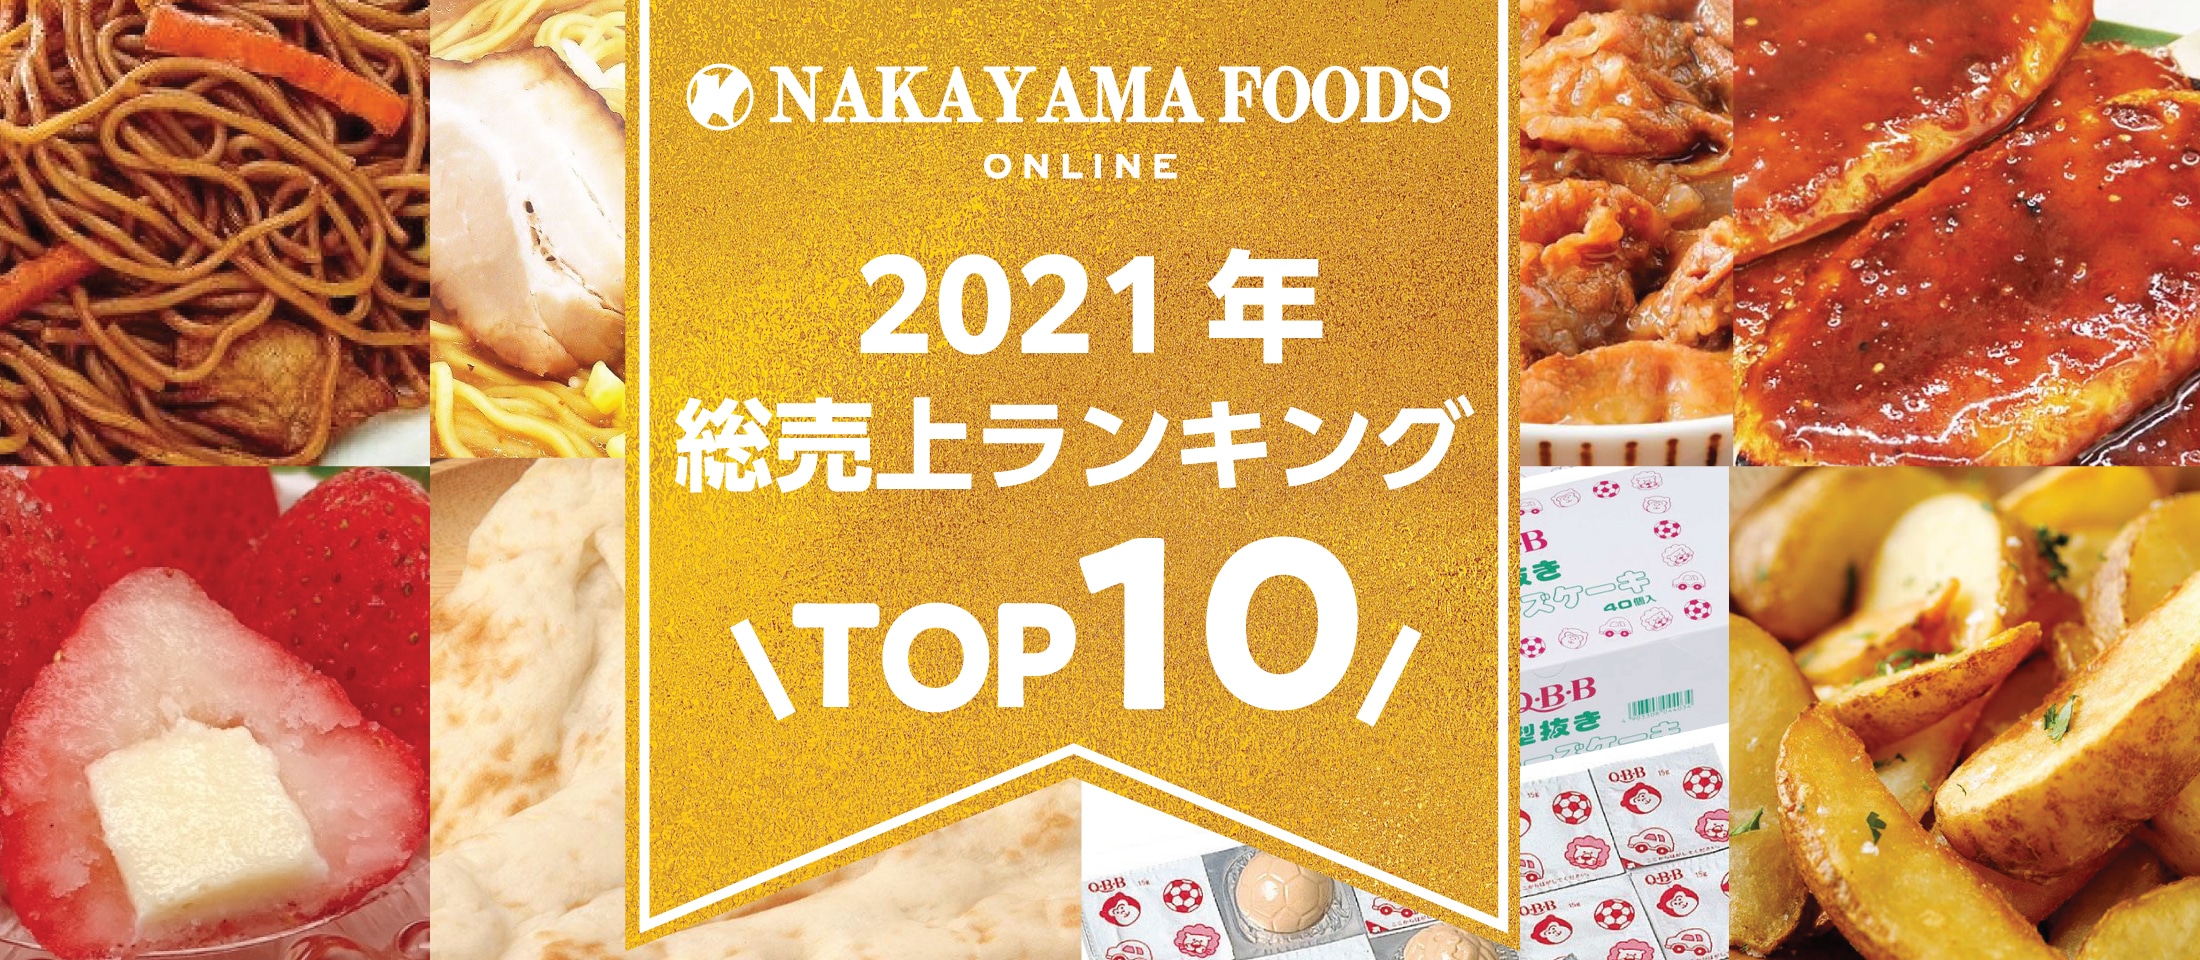 ナカヤマフーズオンライン
2021年総売り上げTOP10